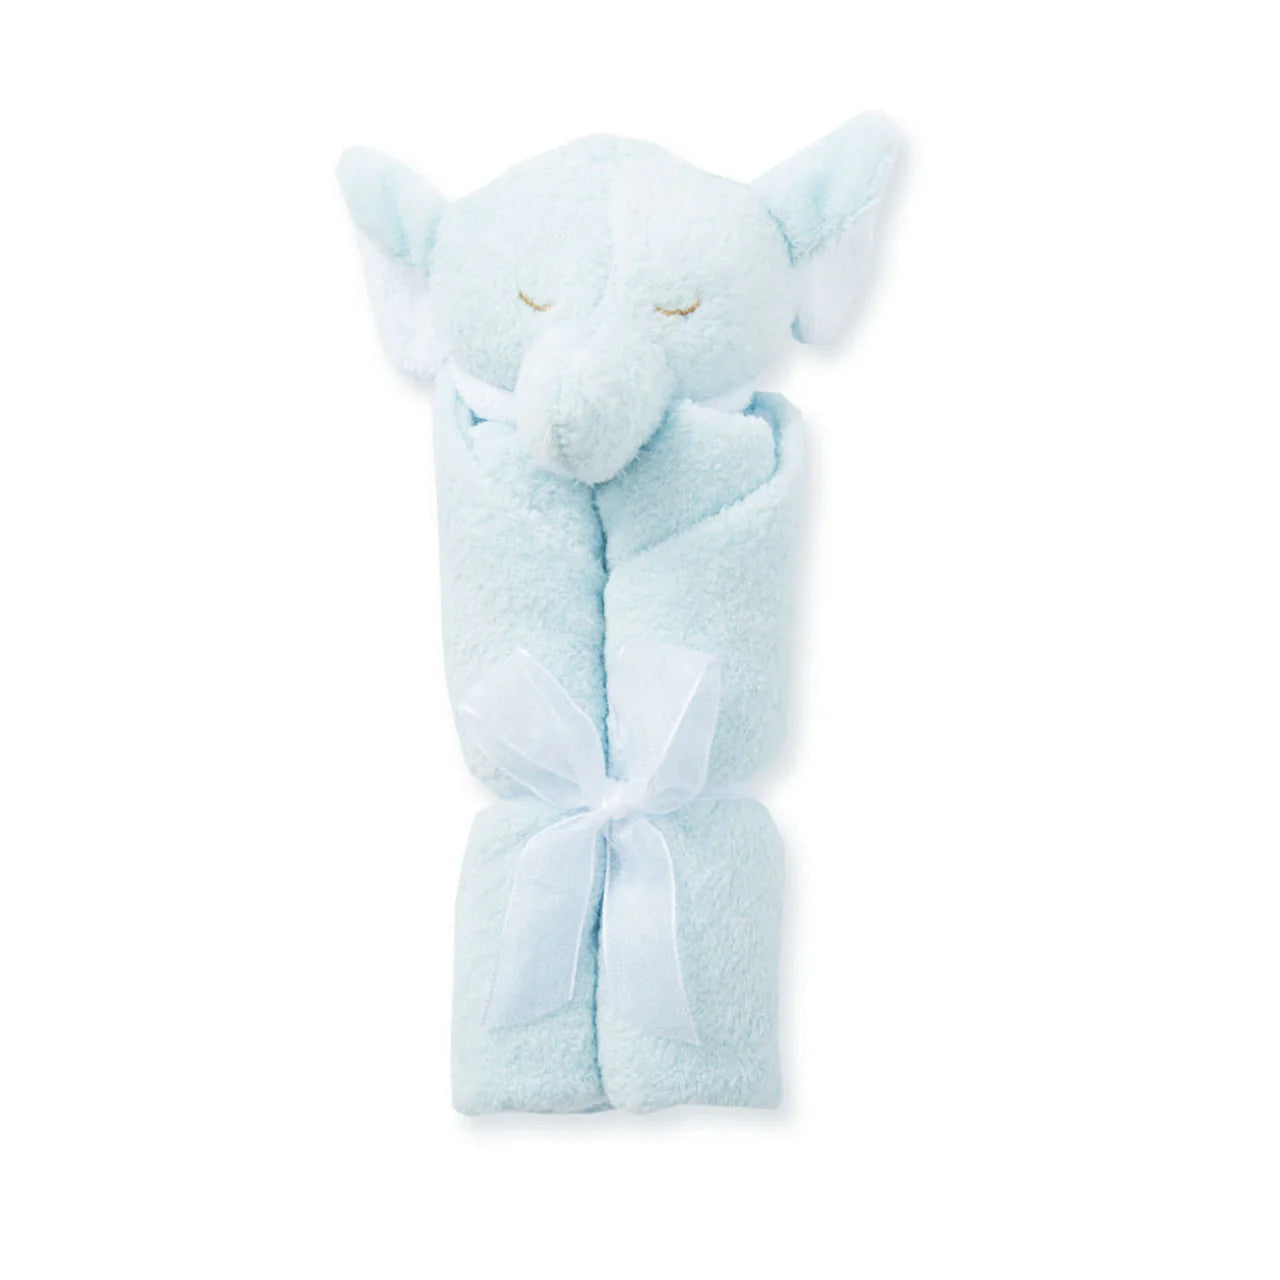 Lovie blankie - Elephant grey and blue for baby